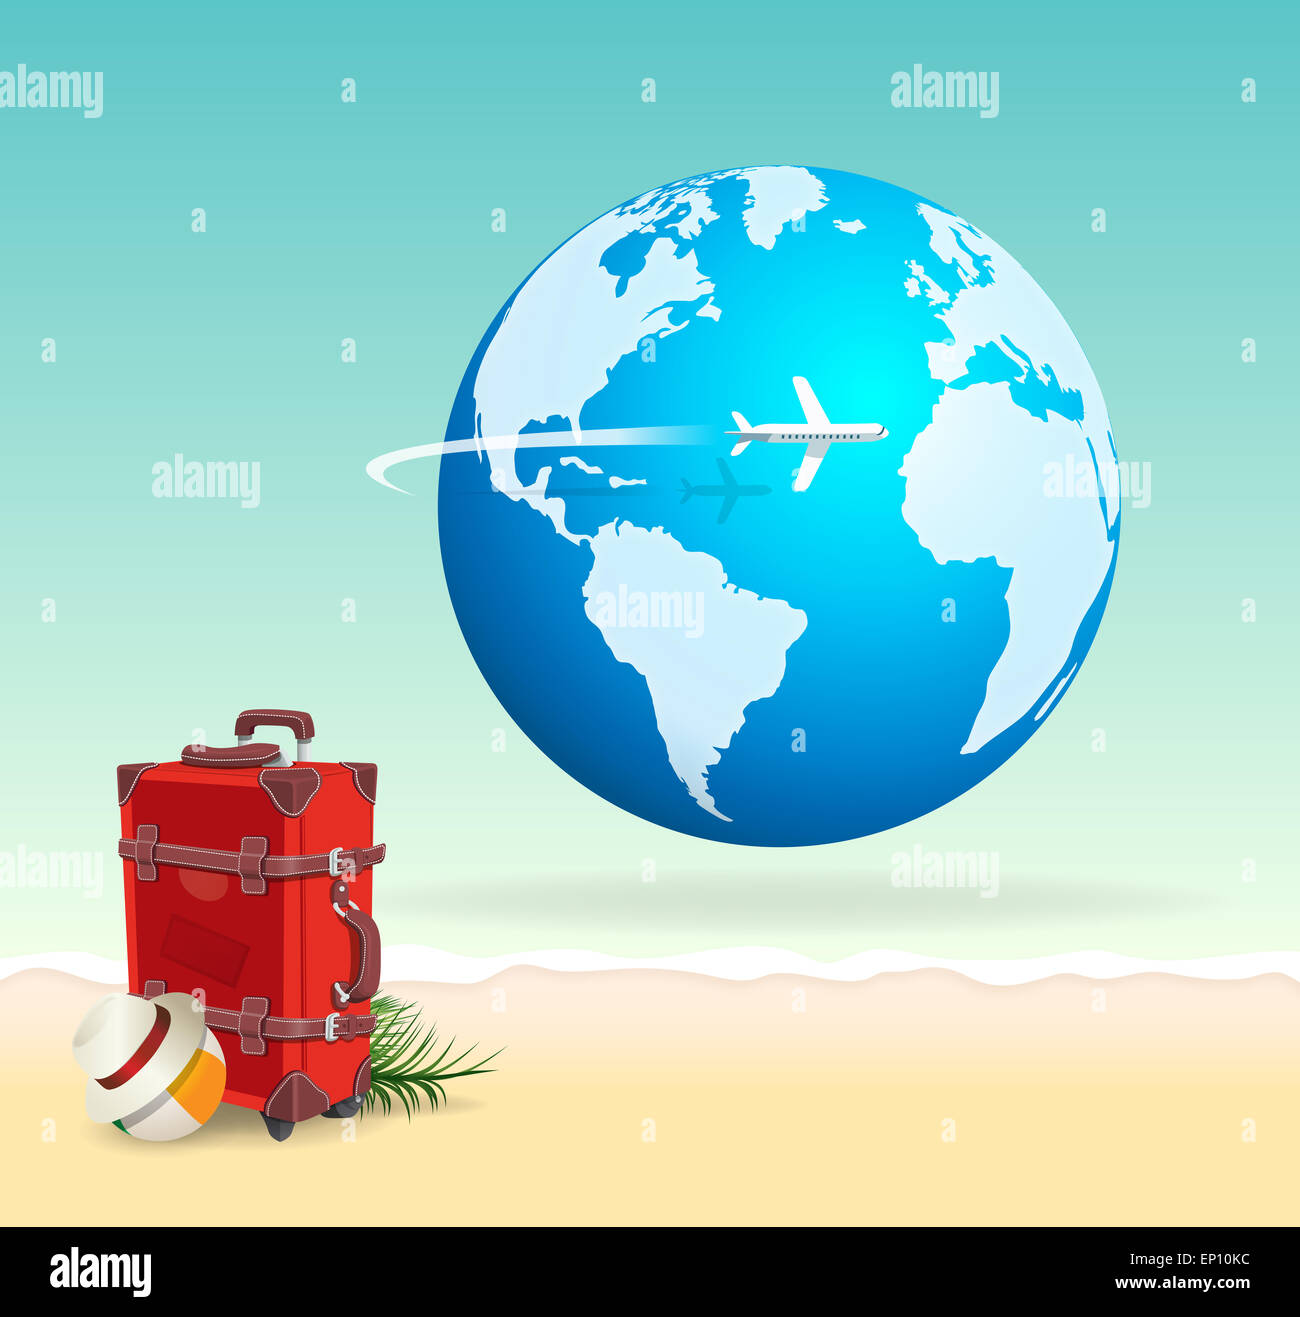 Valise de voyage vacances rouge sur sunny beach avec globe et vol d'un avion à l'échelle. Voyage et d'une escapade tropicale concept Banque D'Images